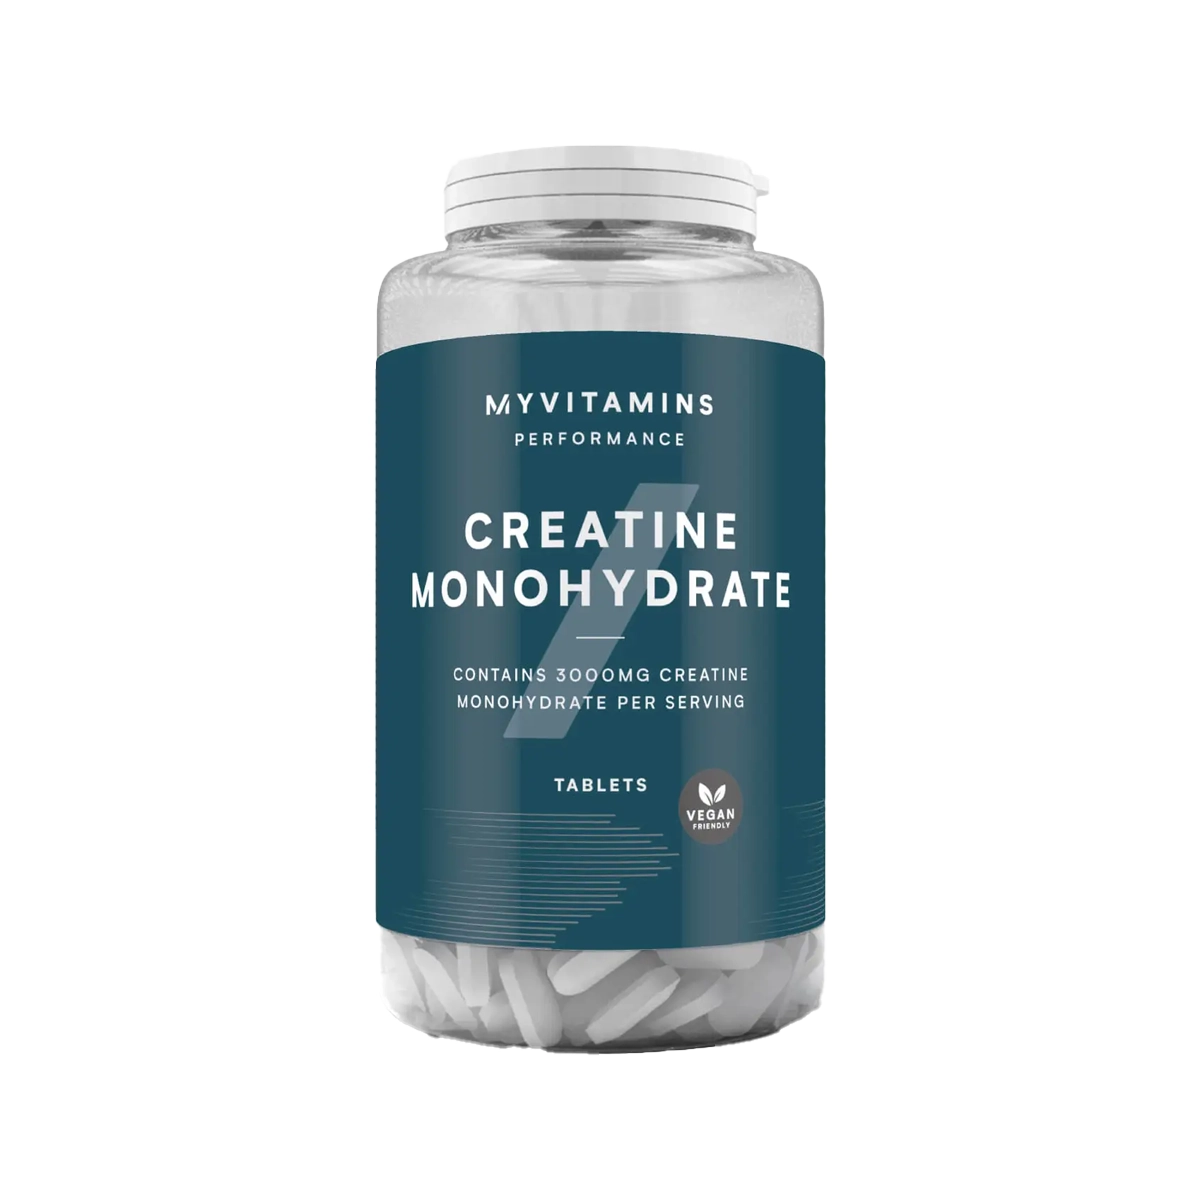 MyProtein Creatine Monohydrate 250 Tablets at MYSUPPLEMENTSHOP